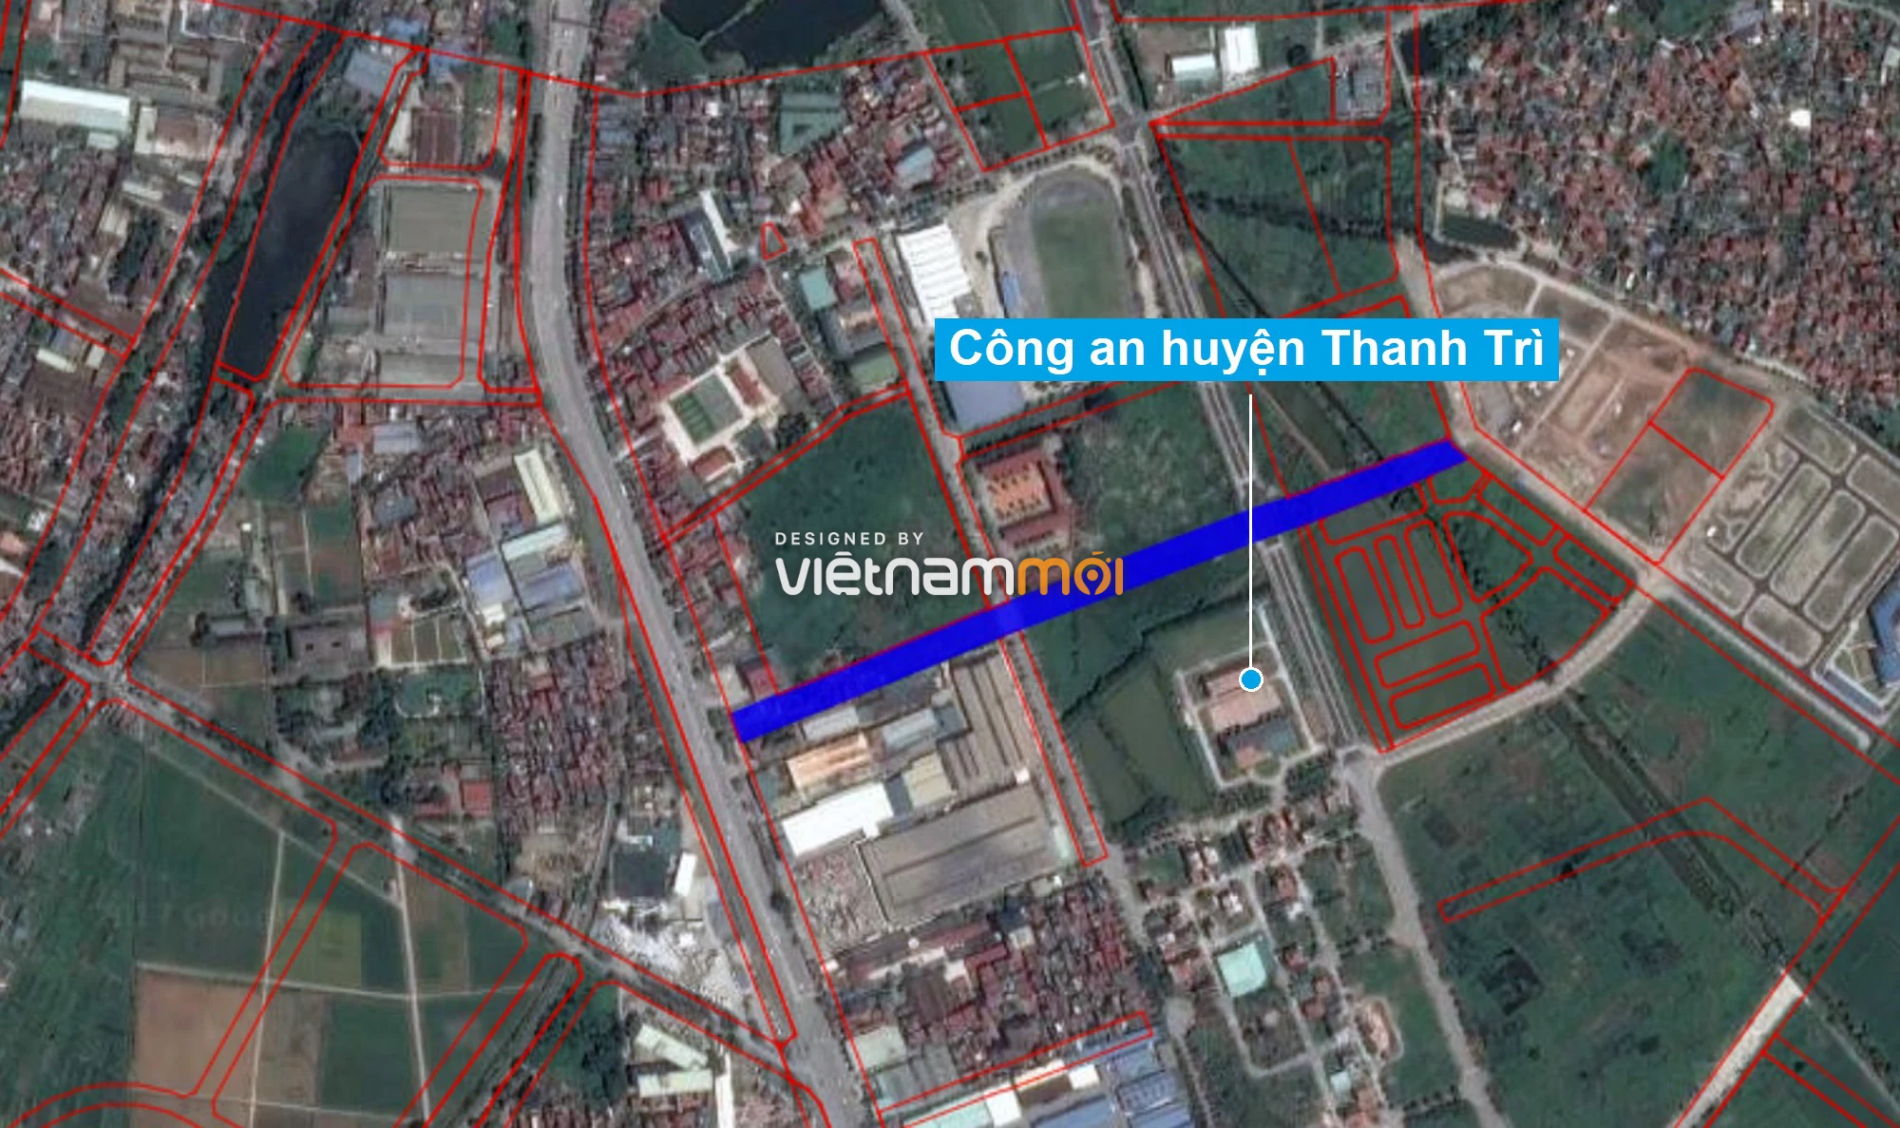 Những khu đất sắp thu hồi để mở đường ở xã Tứ Hiệp, Thanh Trì, Hà Nội (phần 3) - Ảnh 2.